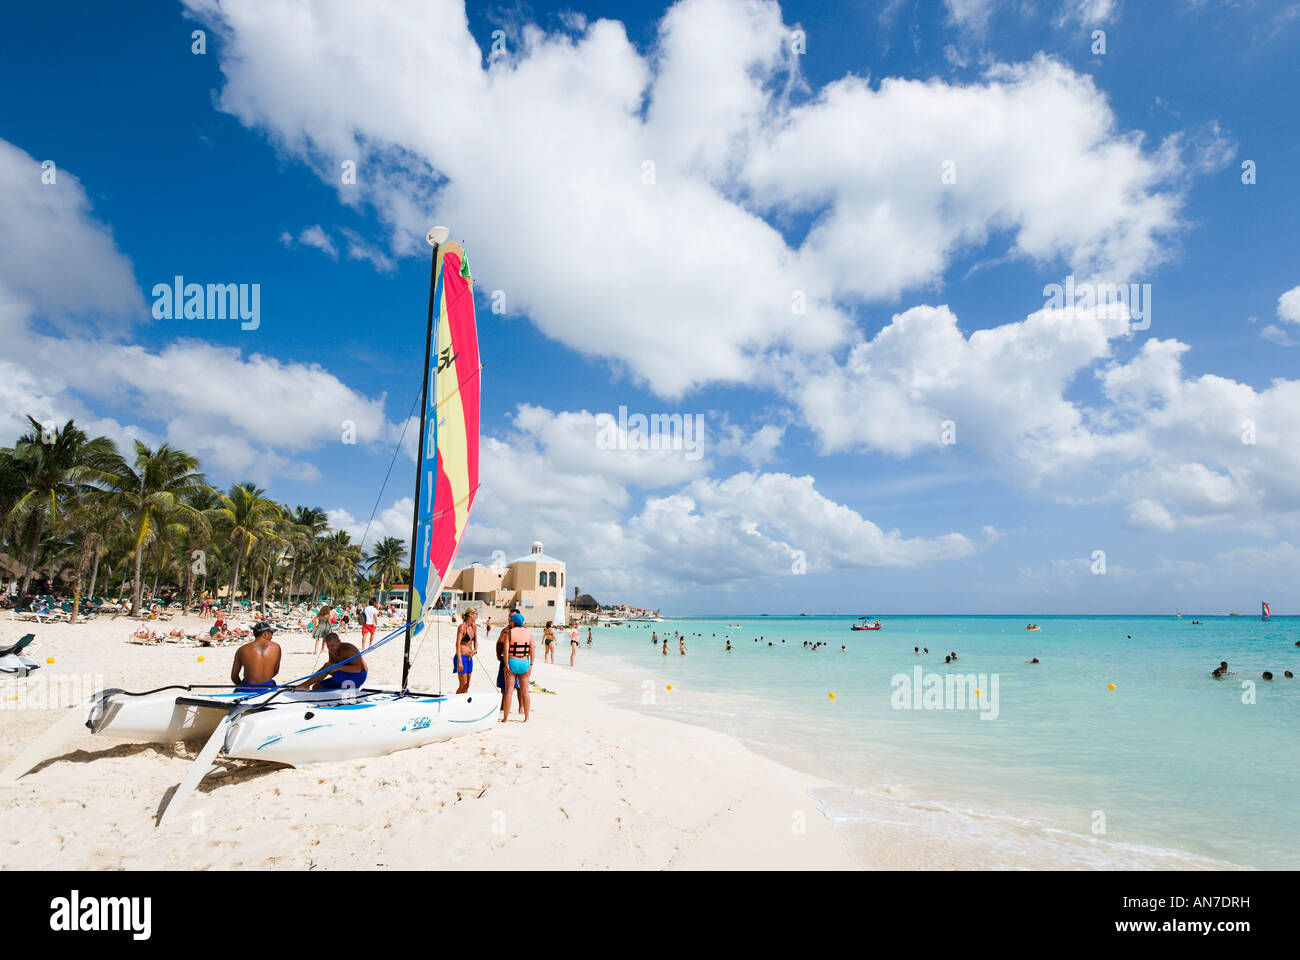 En dehors de la plage, l'hôtel Riu Playacar Playacar, Playa del Carmen, Riviera Maya, péninsule du Yucatan, Quintana Roo, Mexique Banque D'Images